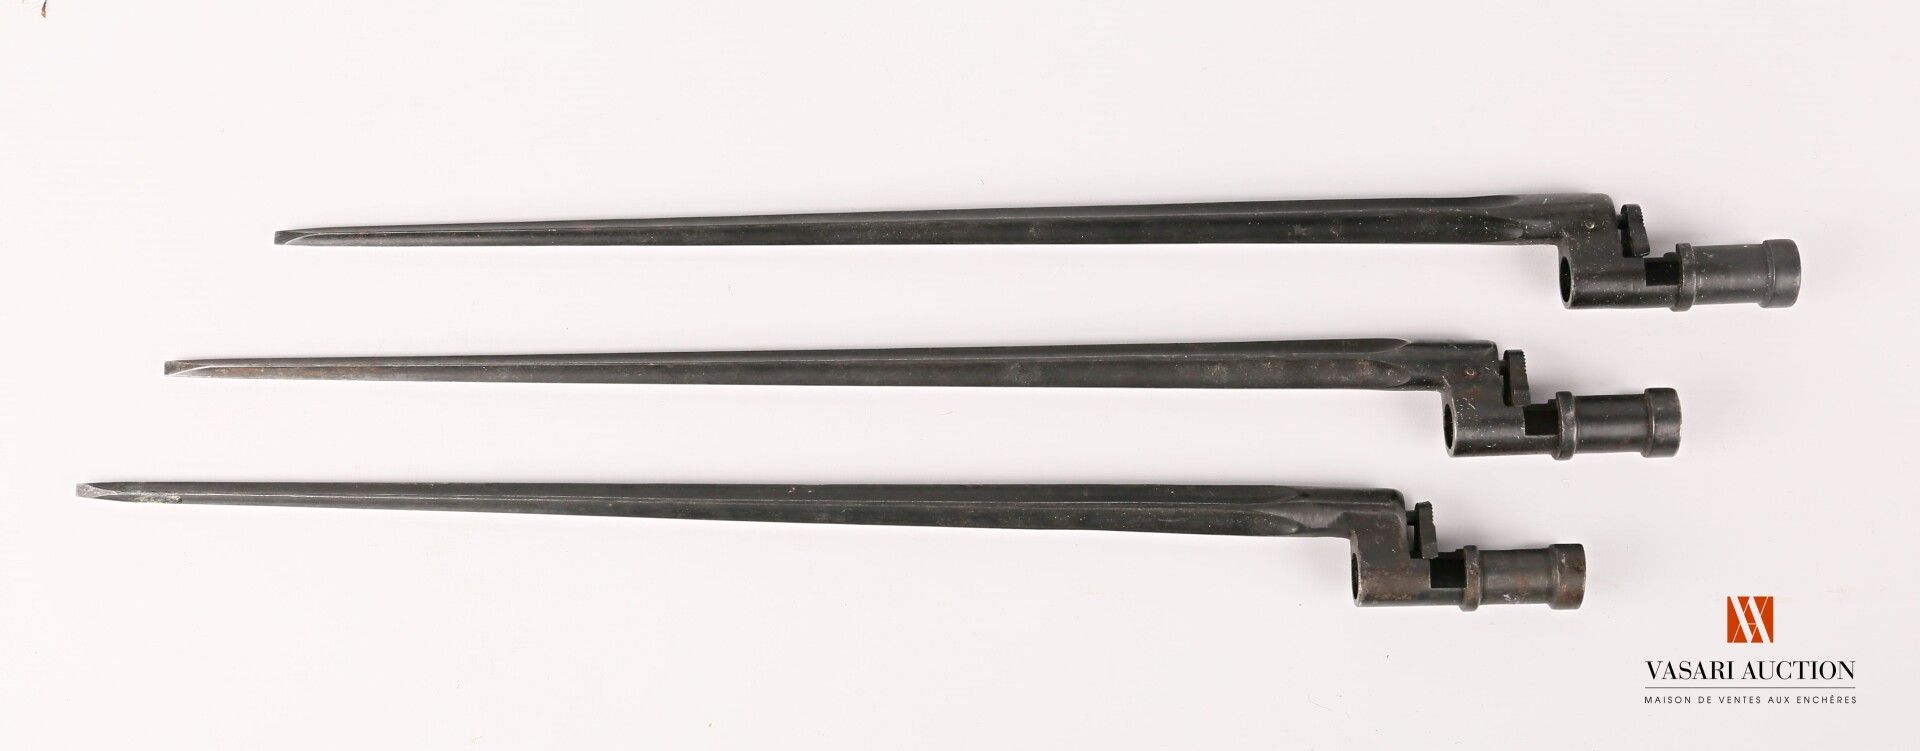 Null Kreuzbajonett für Mosin-Nagant Gewehr 1891, 445 mm Klinge, Phosphatierung, &hellip;